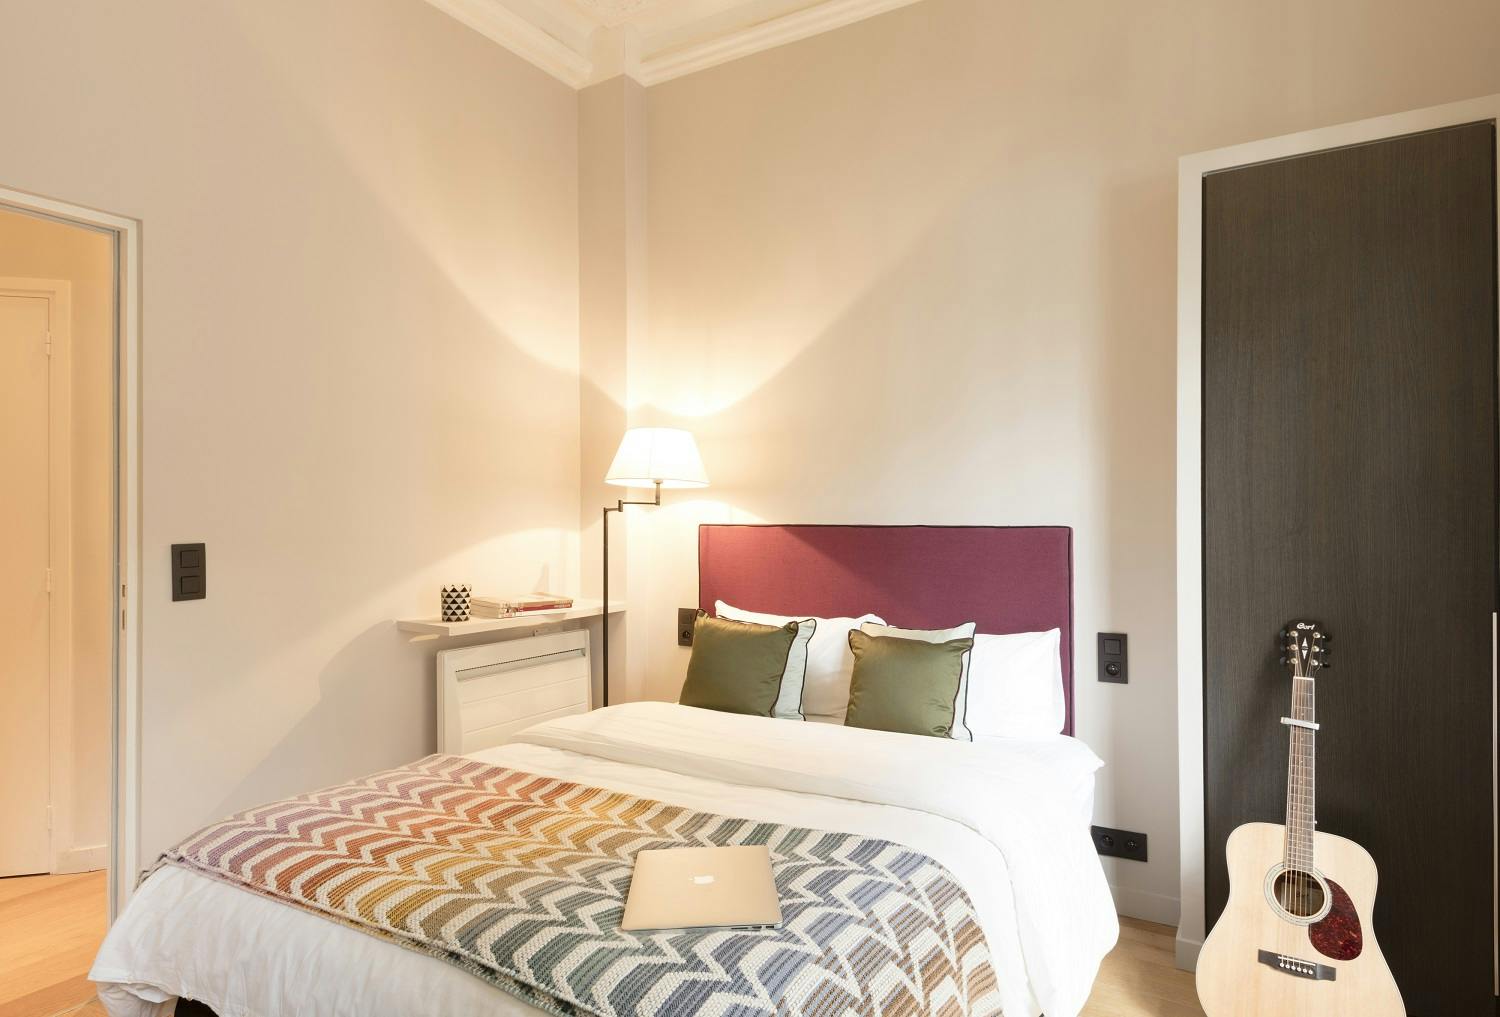 St-Germain Residence - Luxury 4BR - Room #3